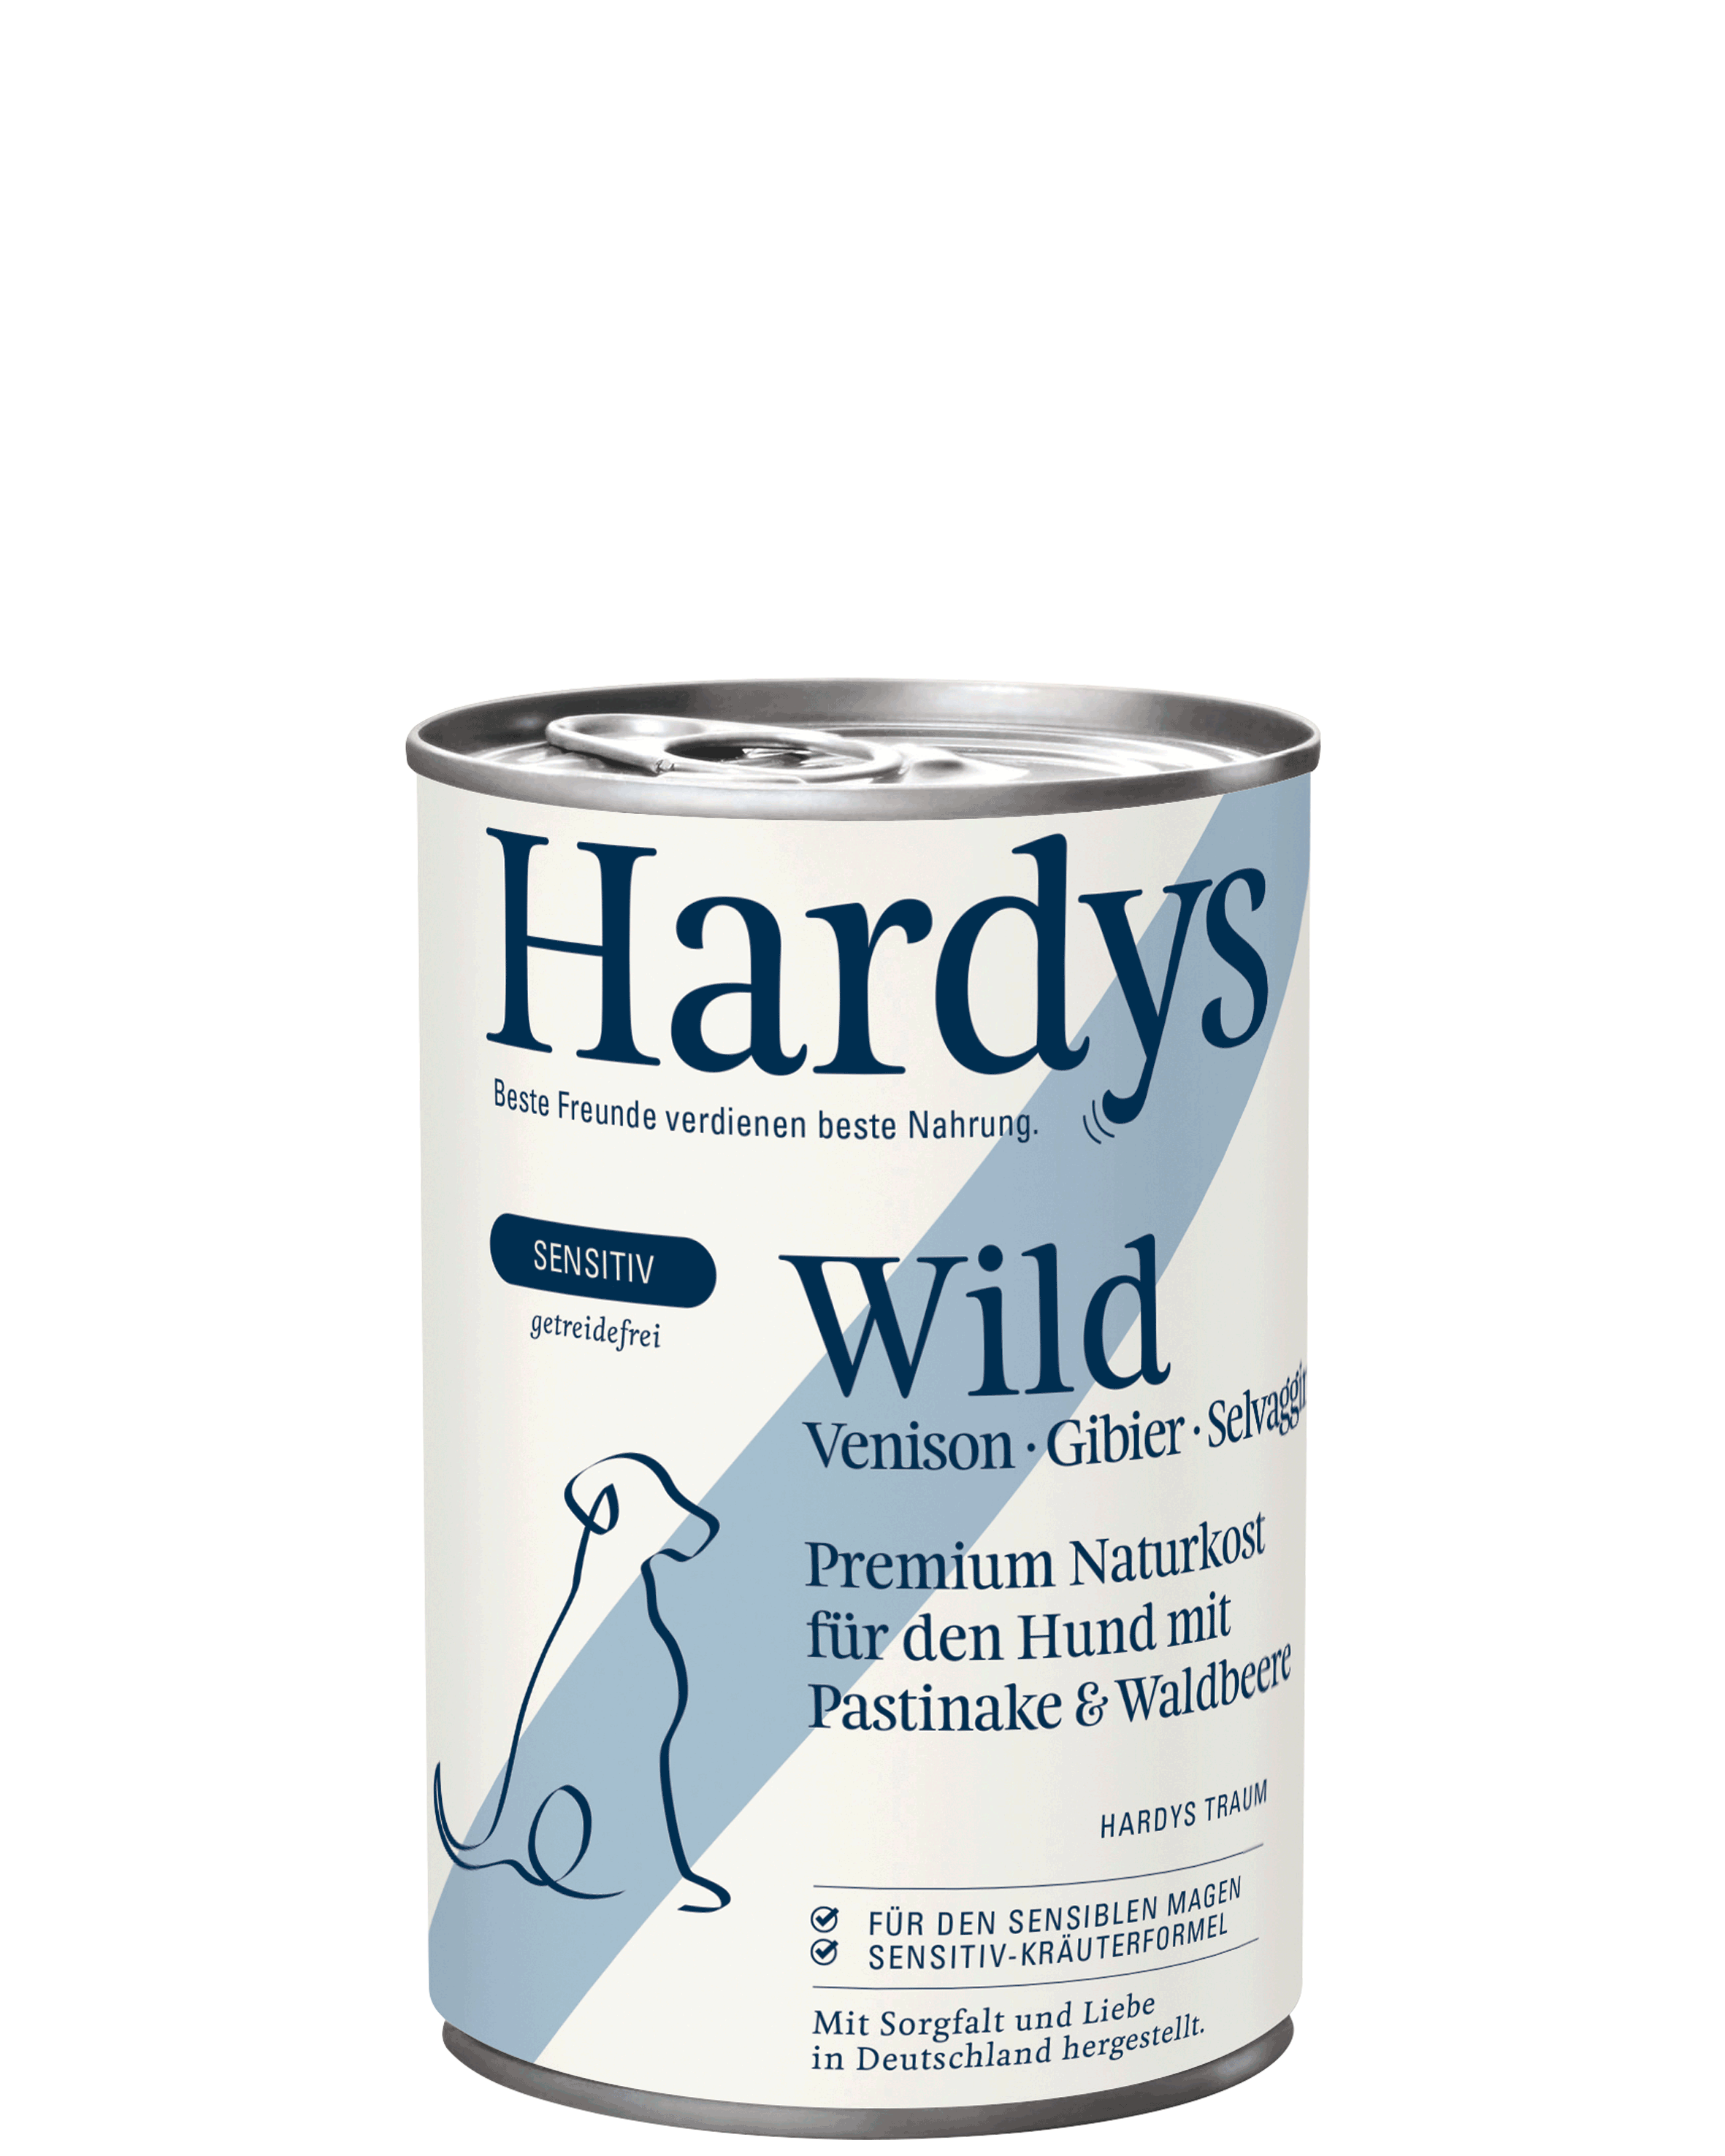 Hardys Sensitiv Wild mit Pastinake & Waldbeere, 400 g